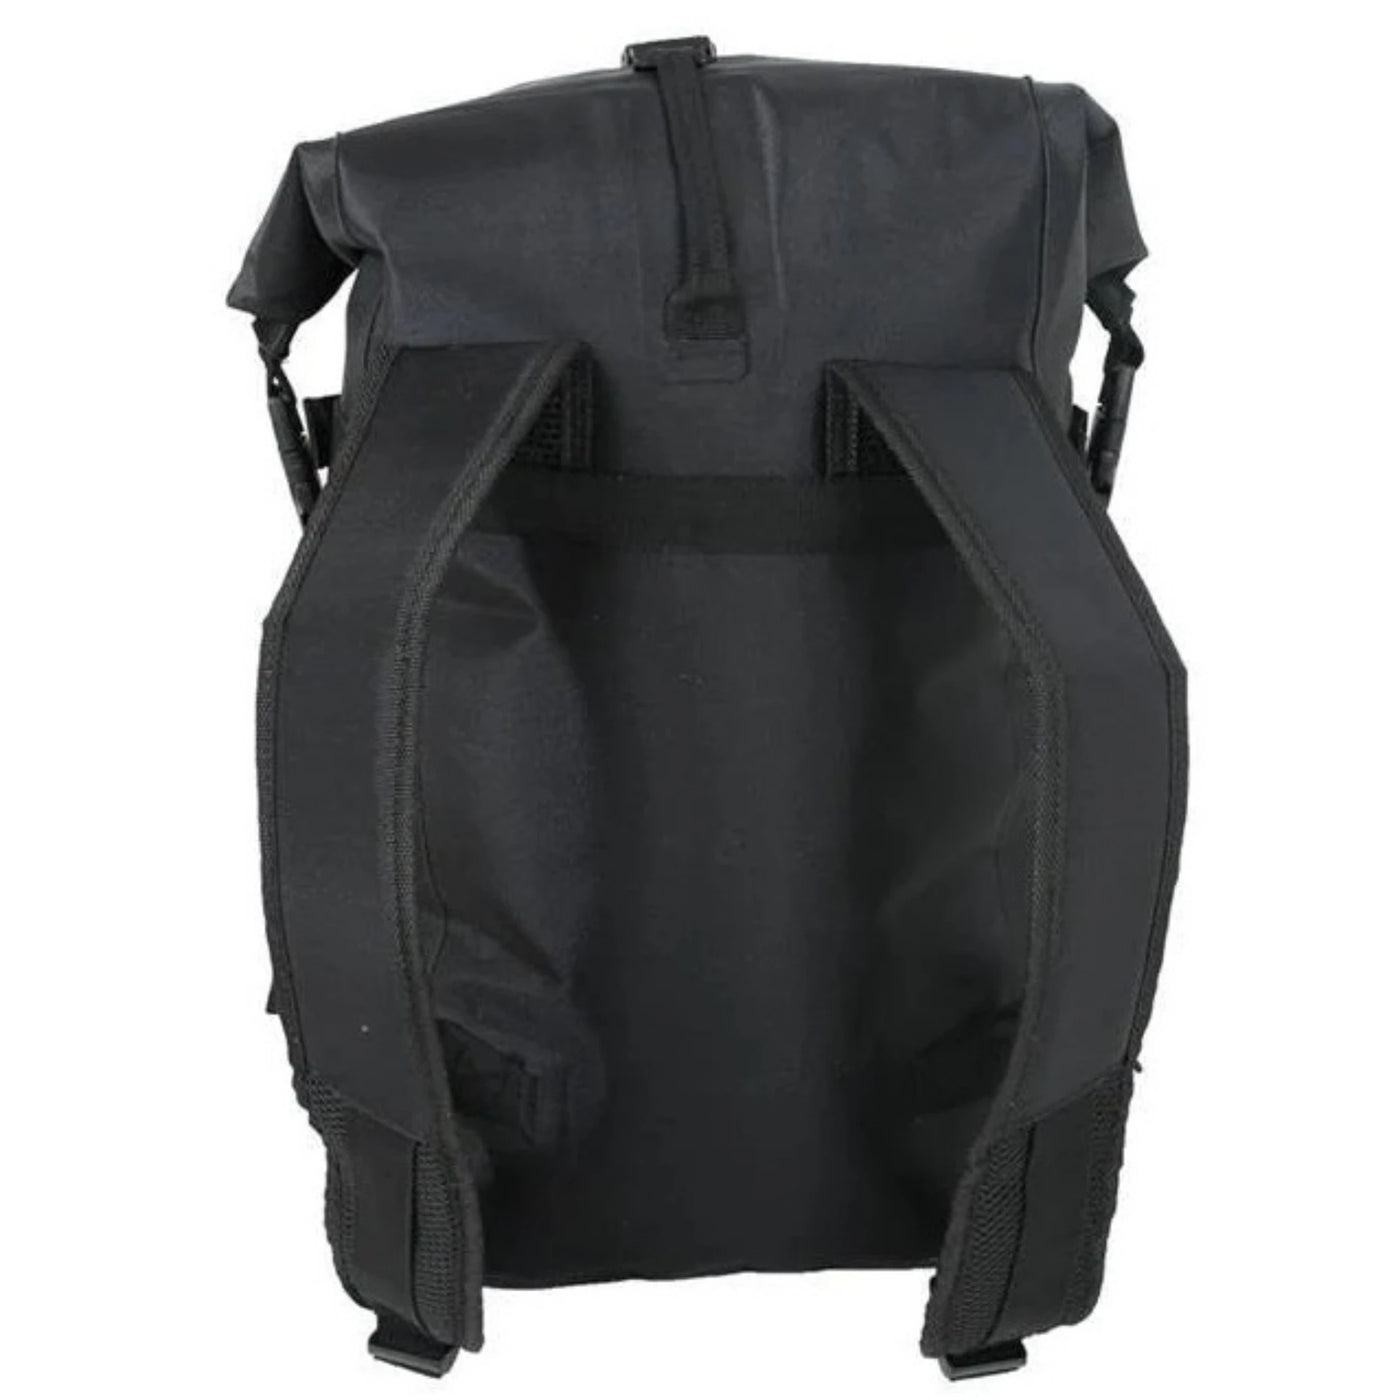 Jetpilot Venture 20L Drysafe Backpack